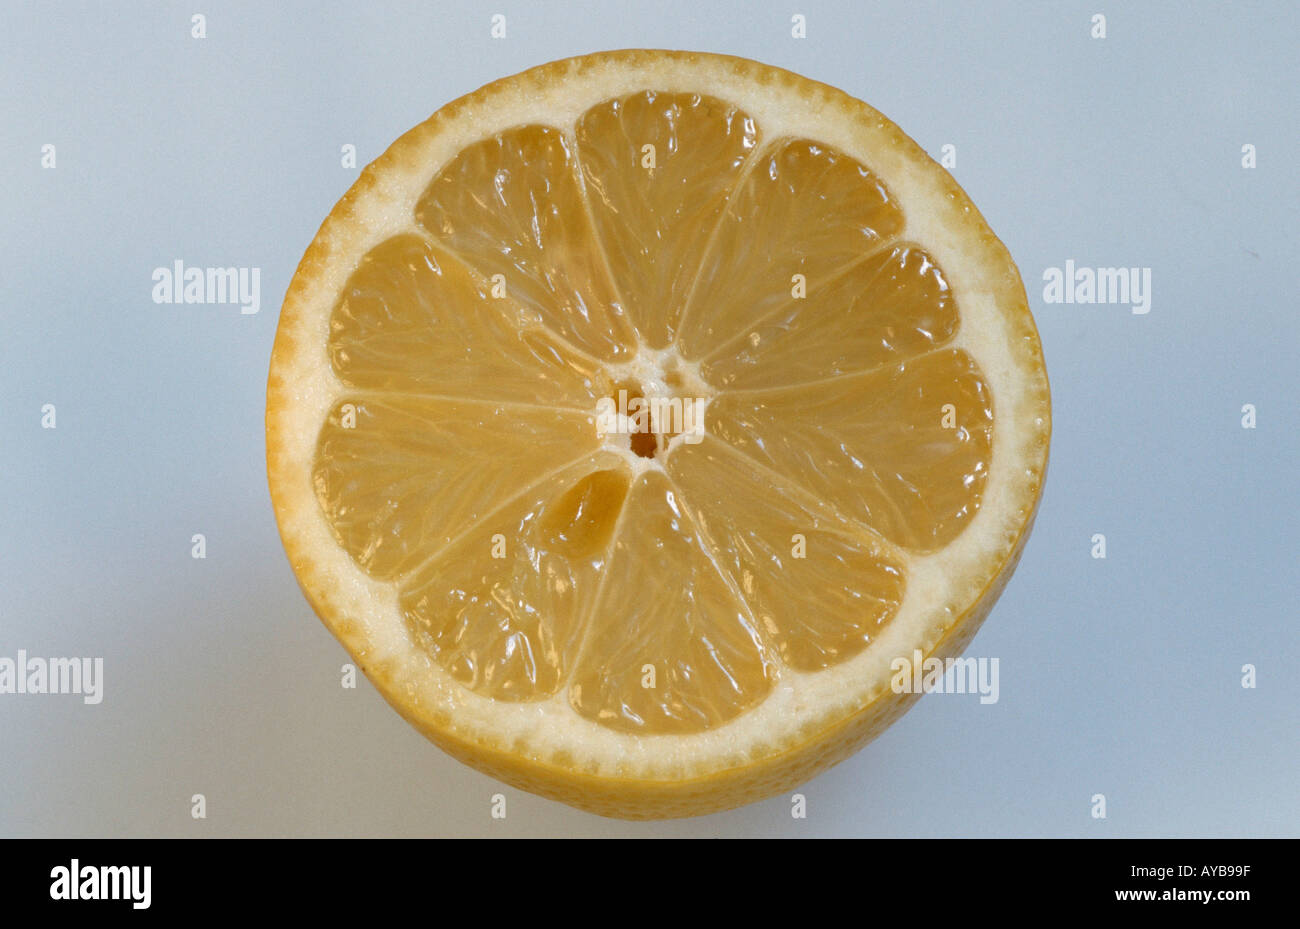 Le citron Citrus limon Zitrone Nutzpflanzen plantes utiles Rautengewaechse Rutaceae Nahrungsmittel jaune gelb alimentaire Querformat Banque D'Images